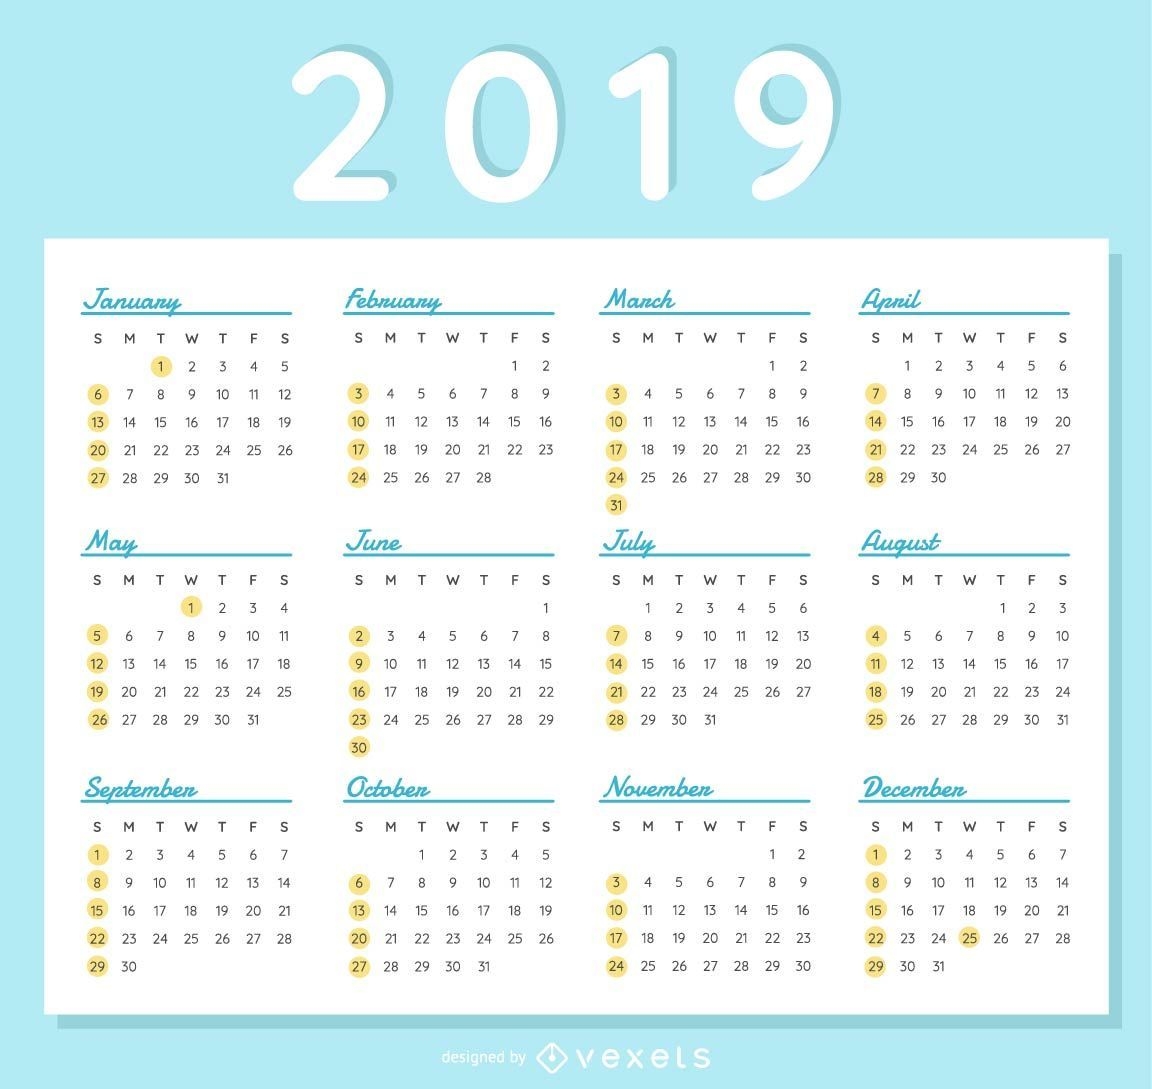 Calendário de lançamentos #38 (Mar/2019)